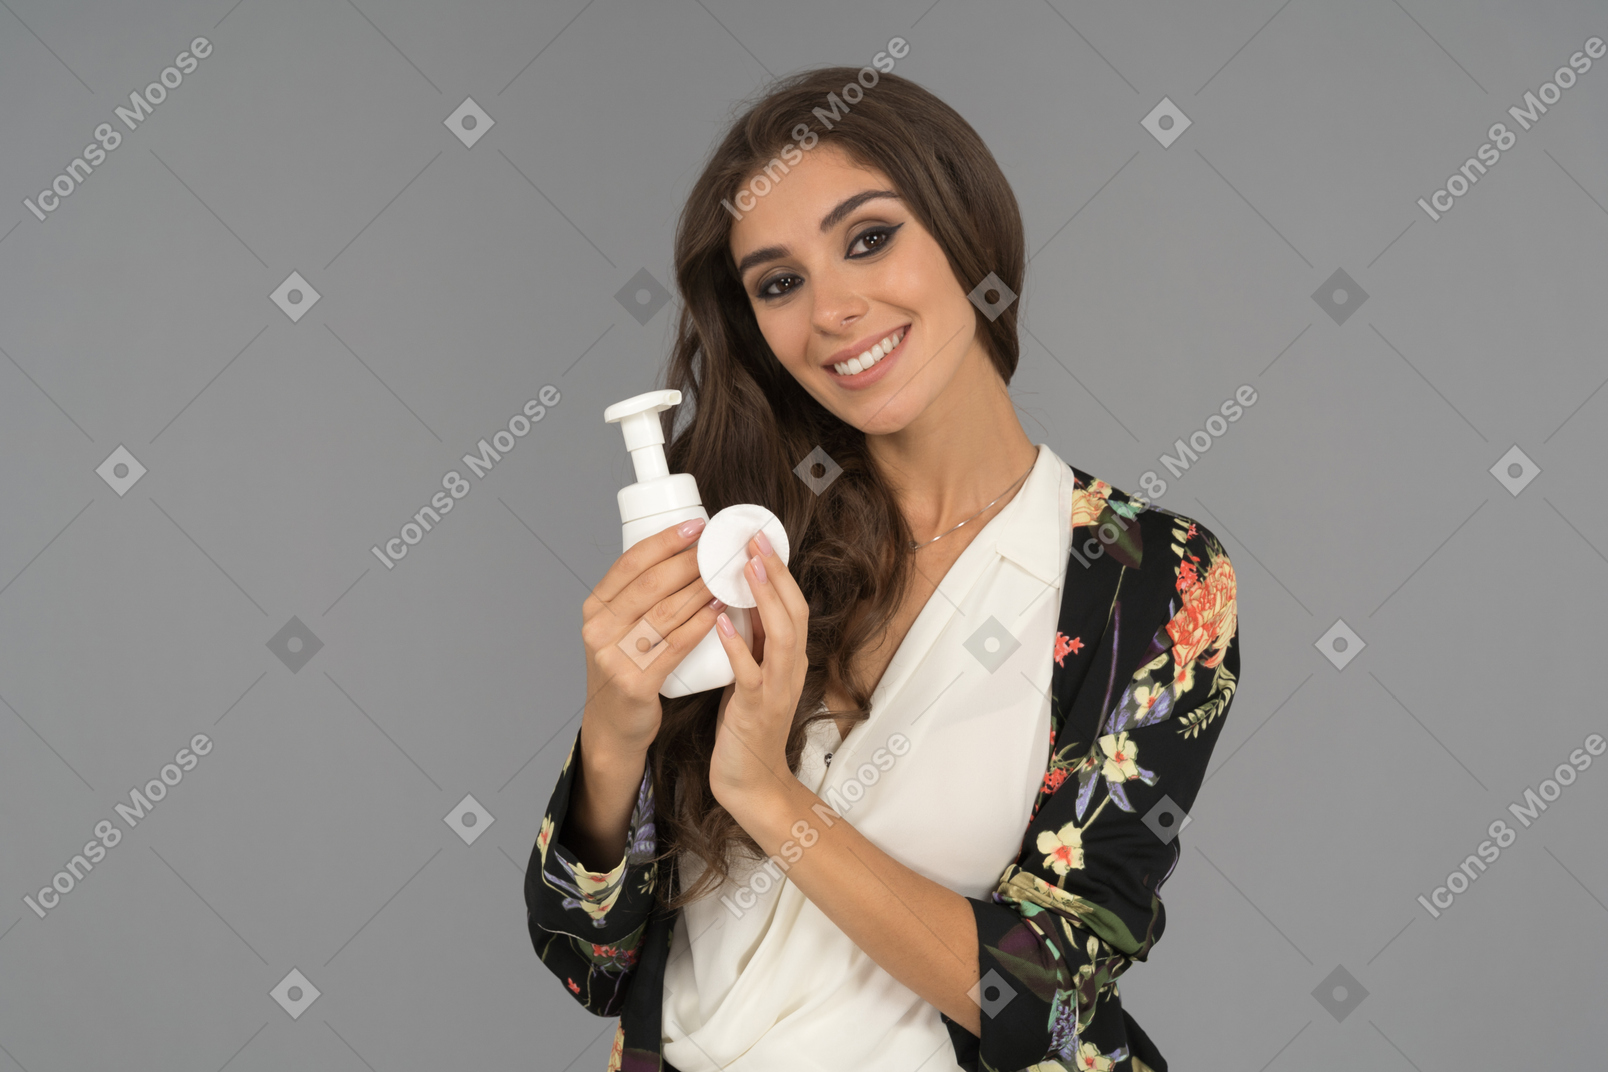 Una bella mujer con una radiante sonrisa que anuncia un nuevo producto de belleza